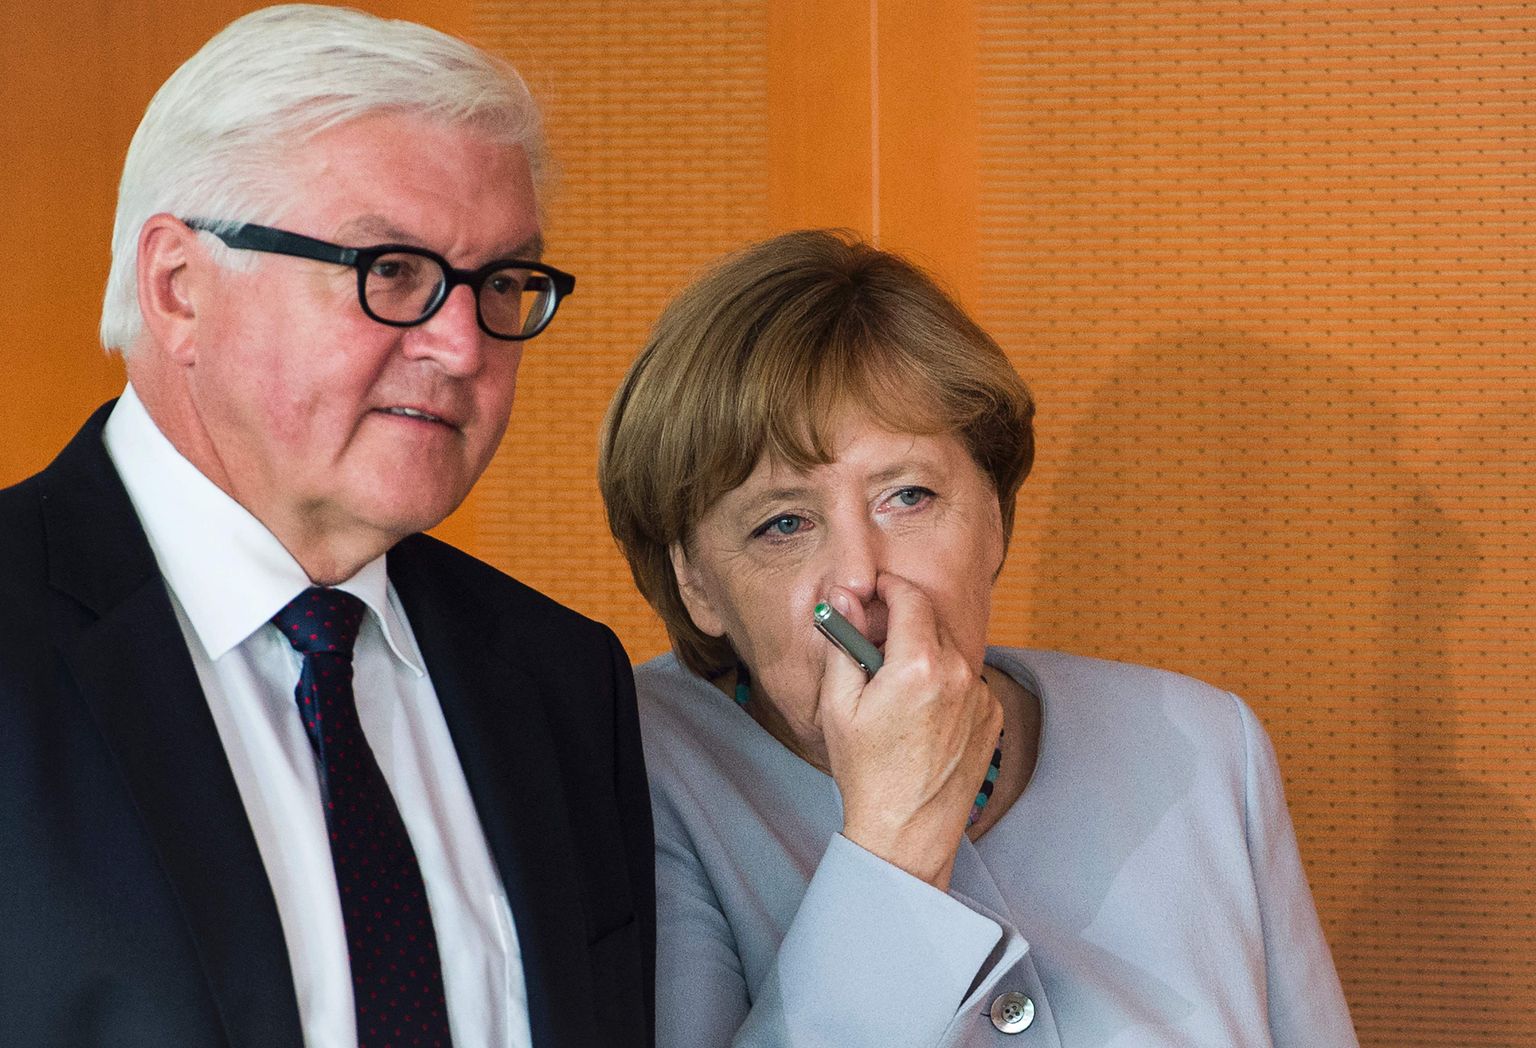 Saksamaa liidukantsler Angela Merkel ja välisminister Frank-Walter Steinmeier möödunud kuu keskel Berliinis valitsuskohtumisele saabumas.